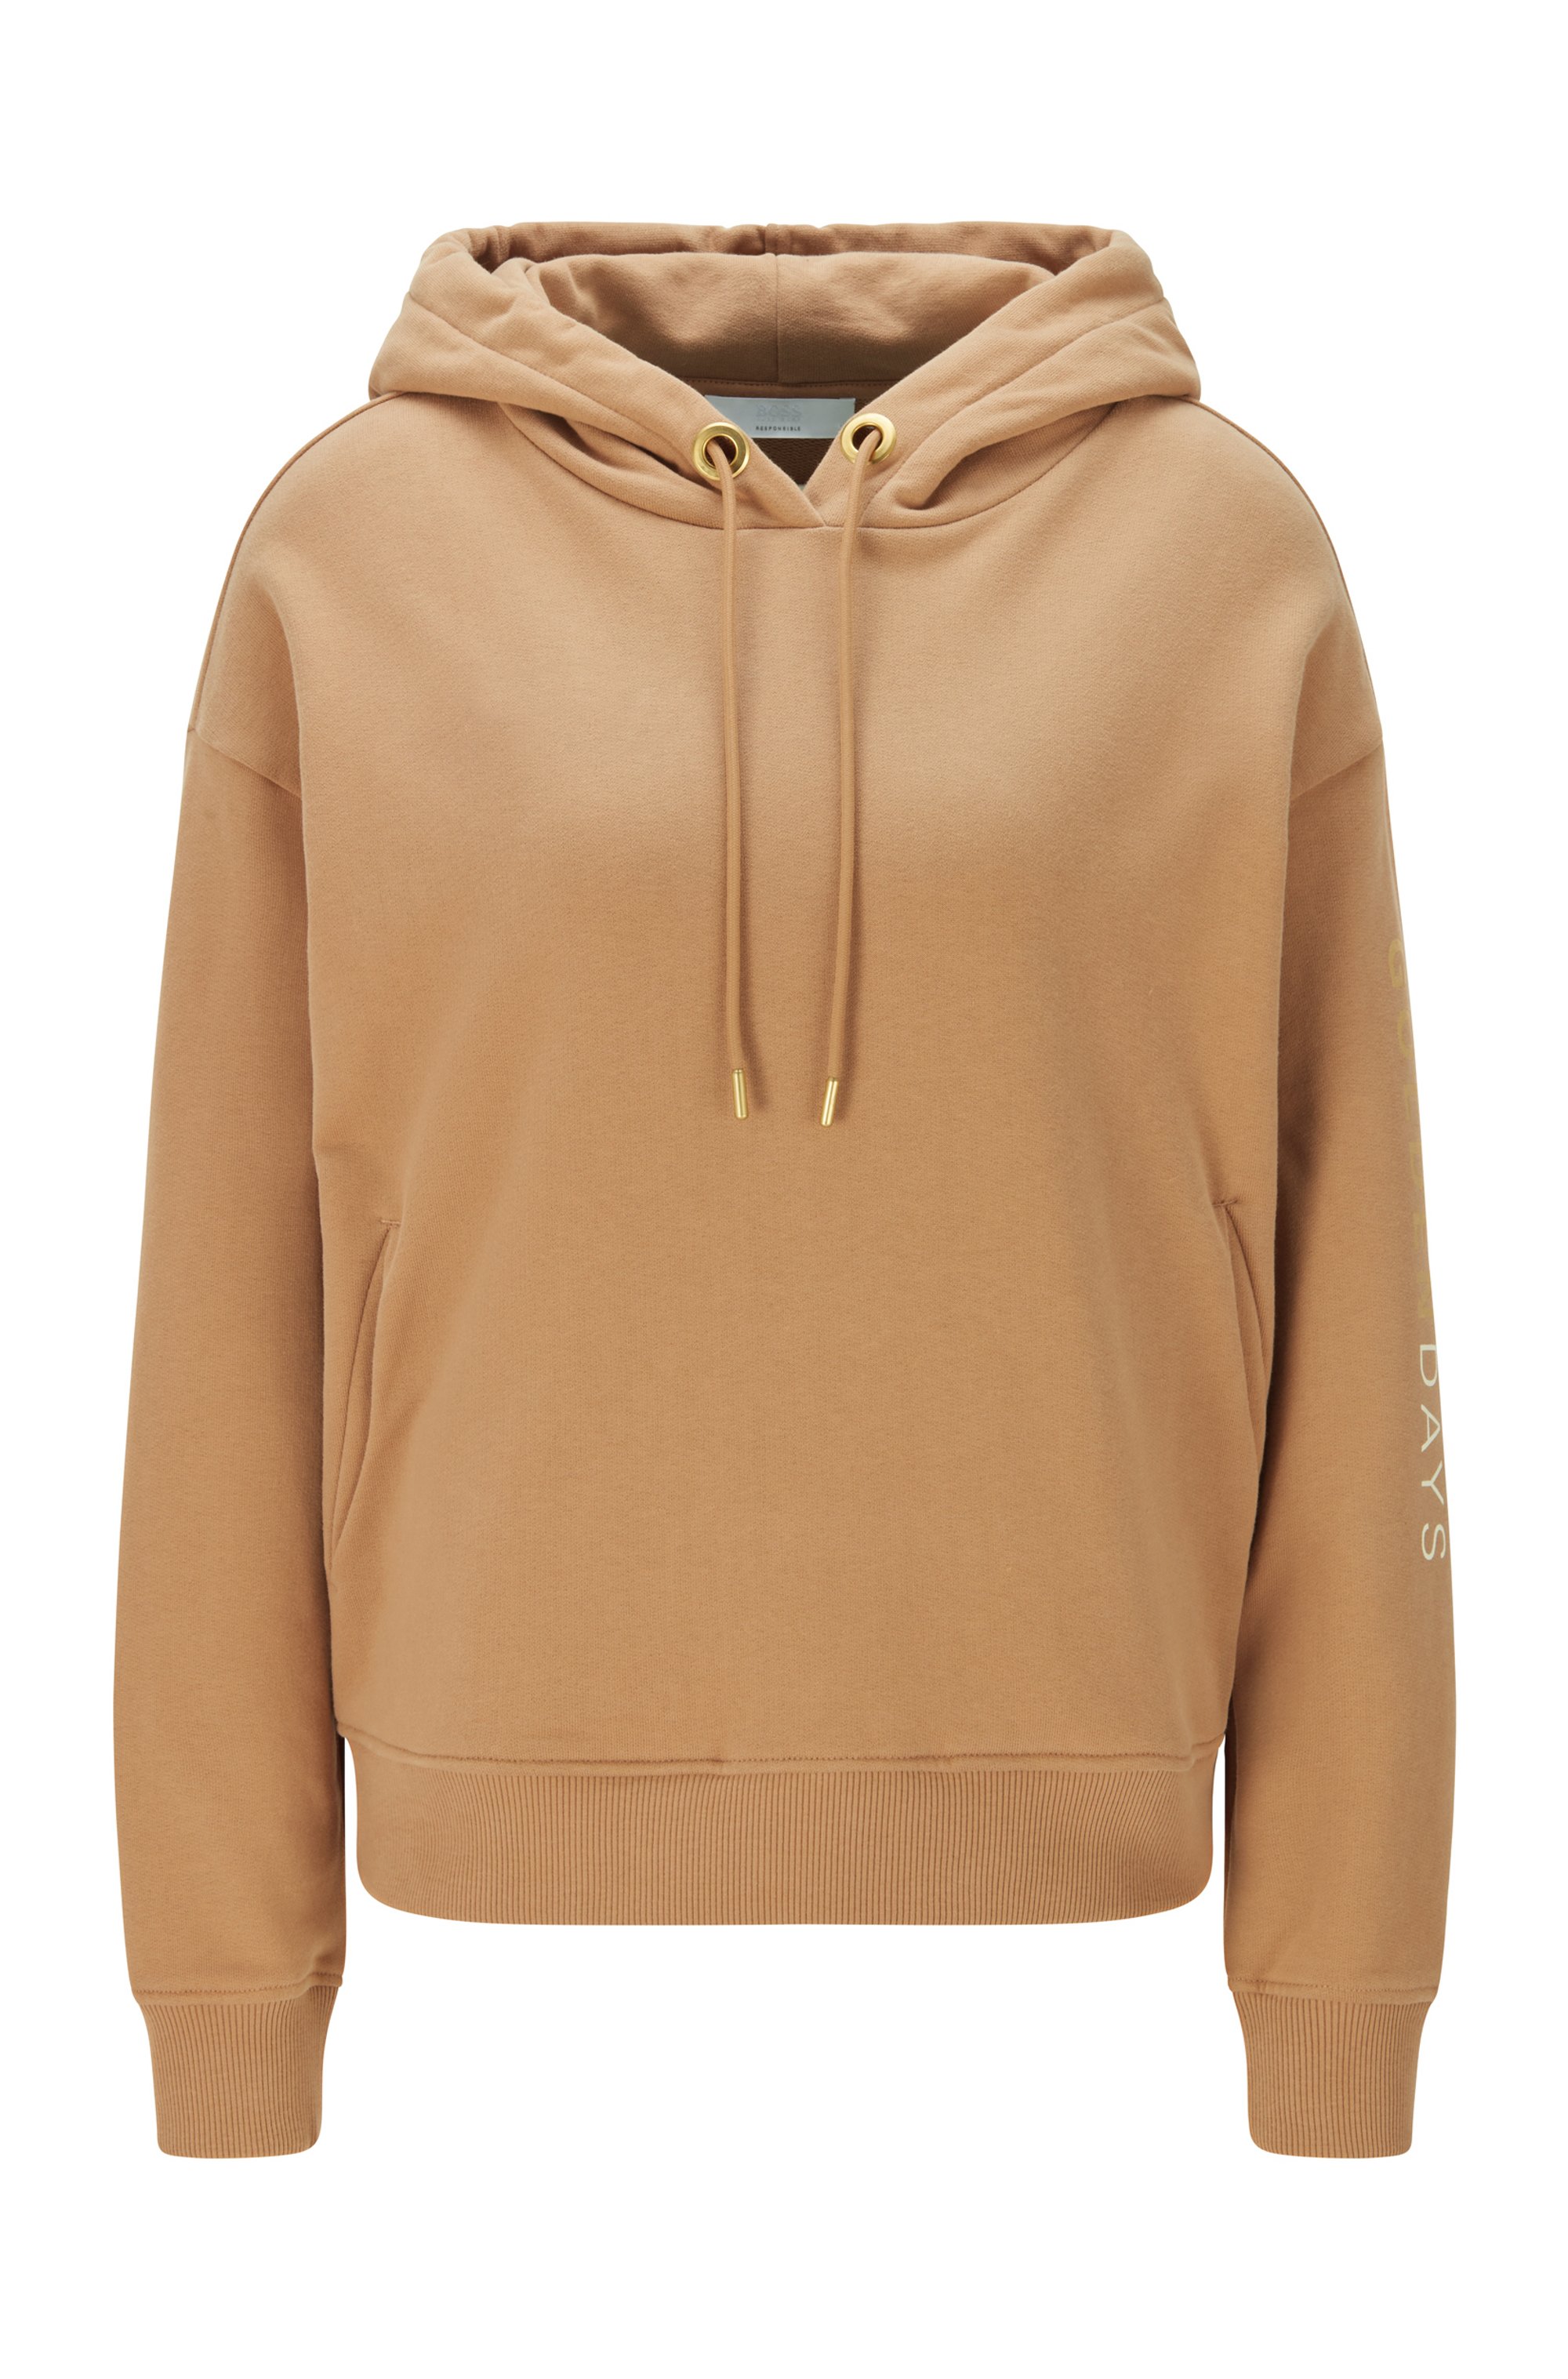 Golden-logo hooded sweatshirt in an organic-cotton blend, Light Brown